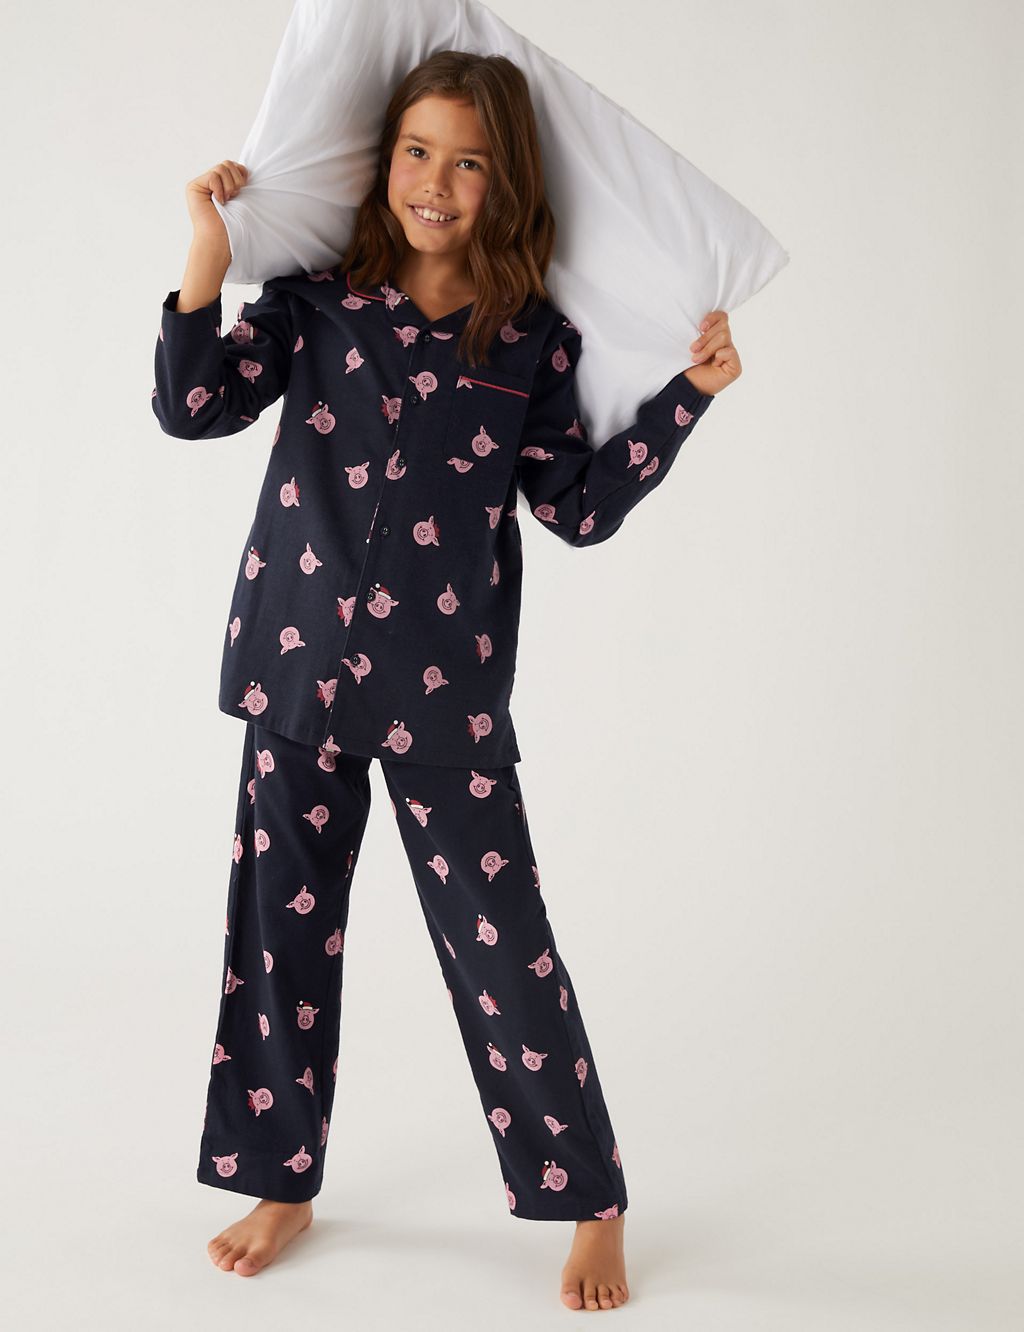 Percy Pig™ Print Family Christmas Pyjamas (2-16 Yrs) 3 of 5